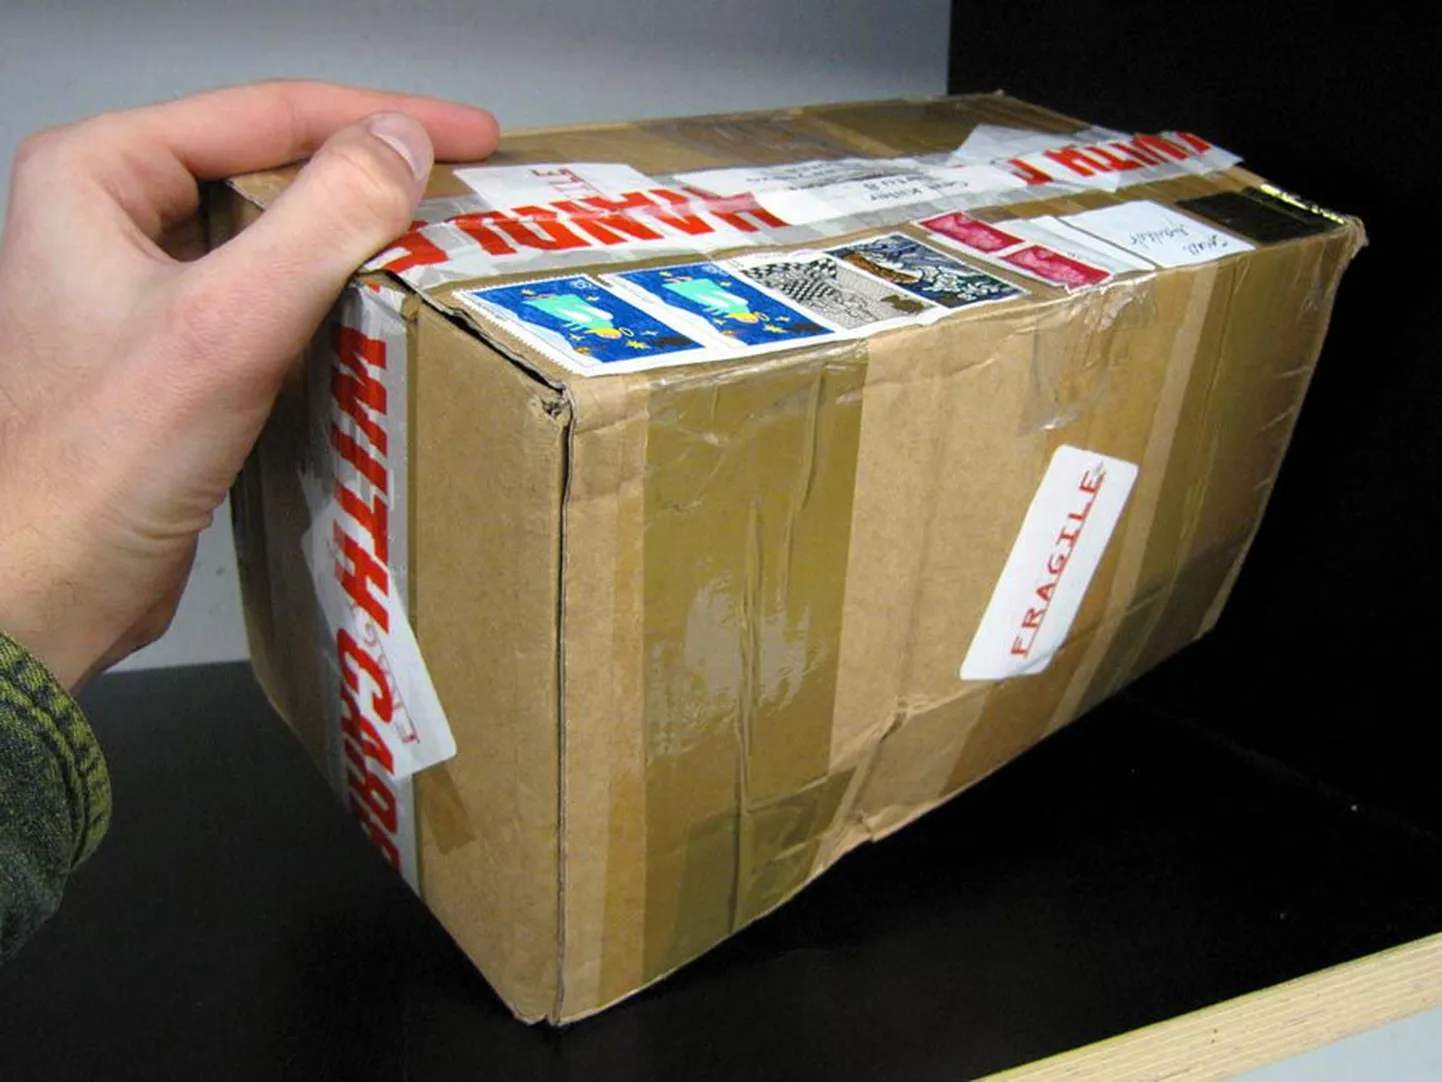 Üle 500-grammiseid posti­pakke USA-sse praegu saata ei saa.